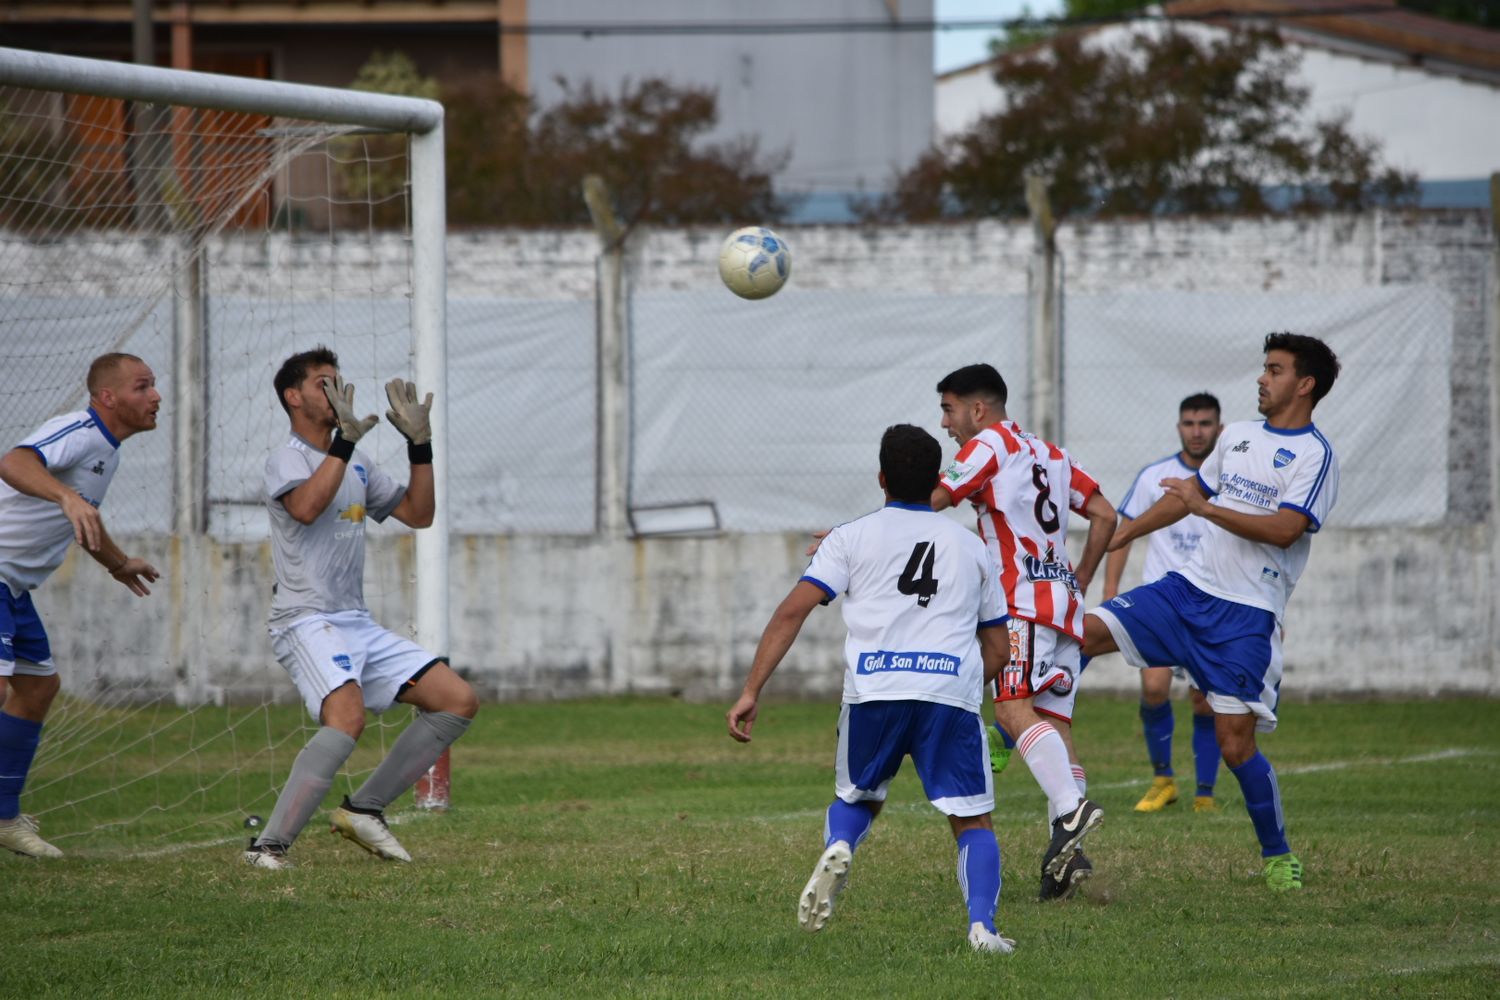 Torneo Preparación 2021: en la vuelta de la competencia, ganó Independencia y empataron Paraná y San Martín